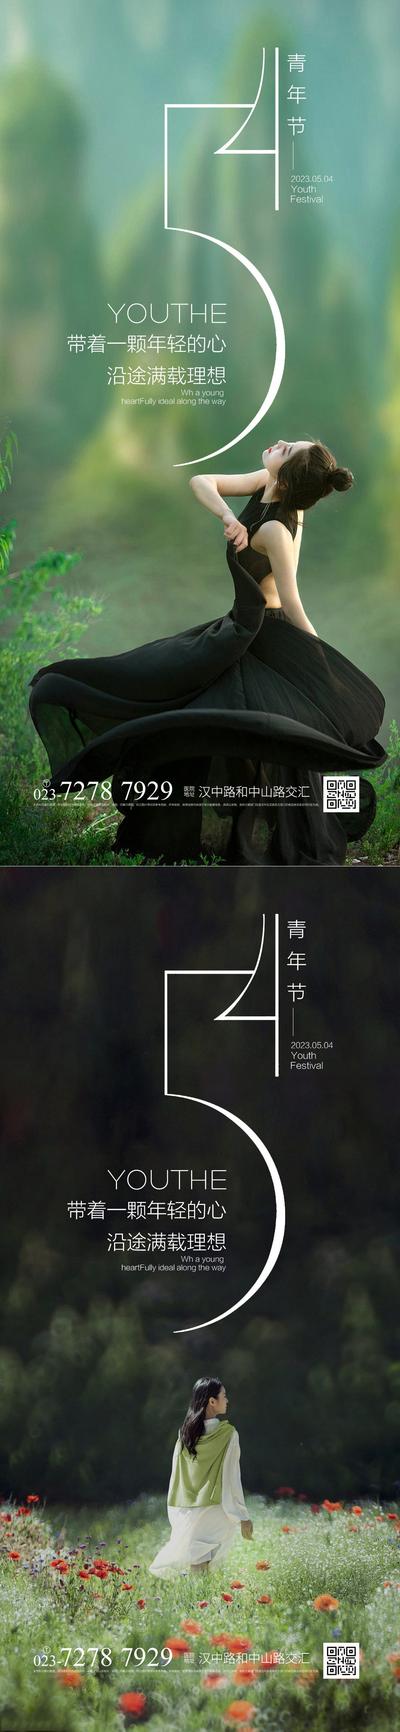 南门网 广告 海报 节日 青年节 54 舞蹈 优雅 系列